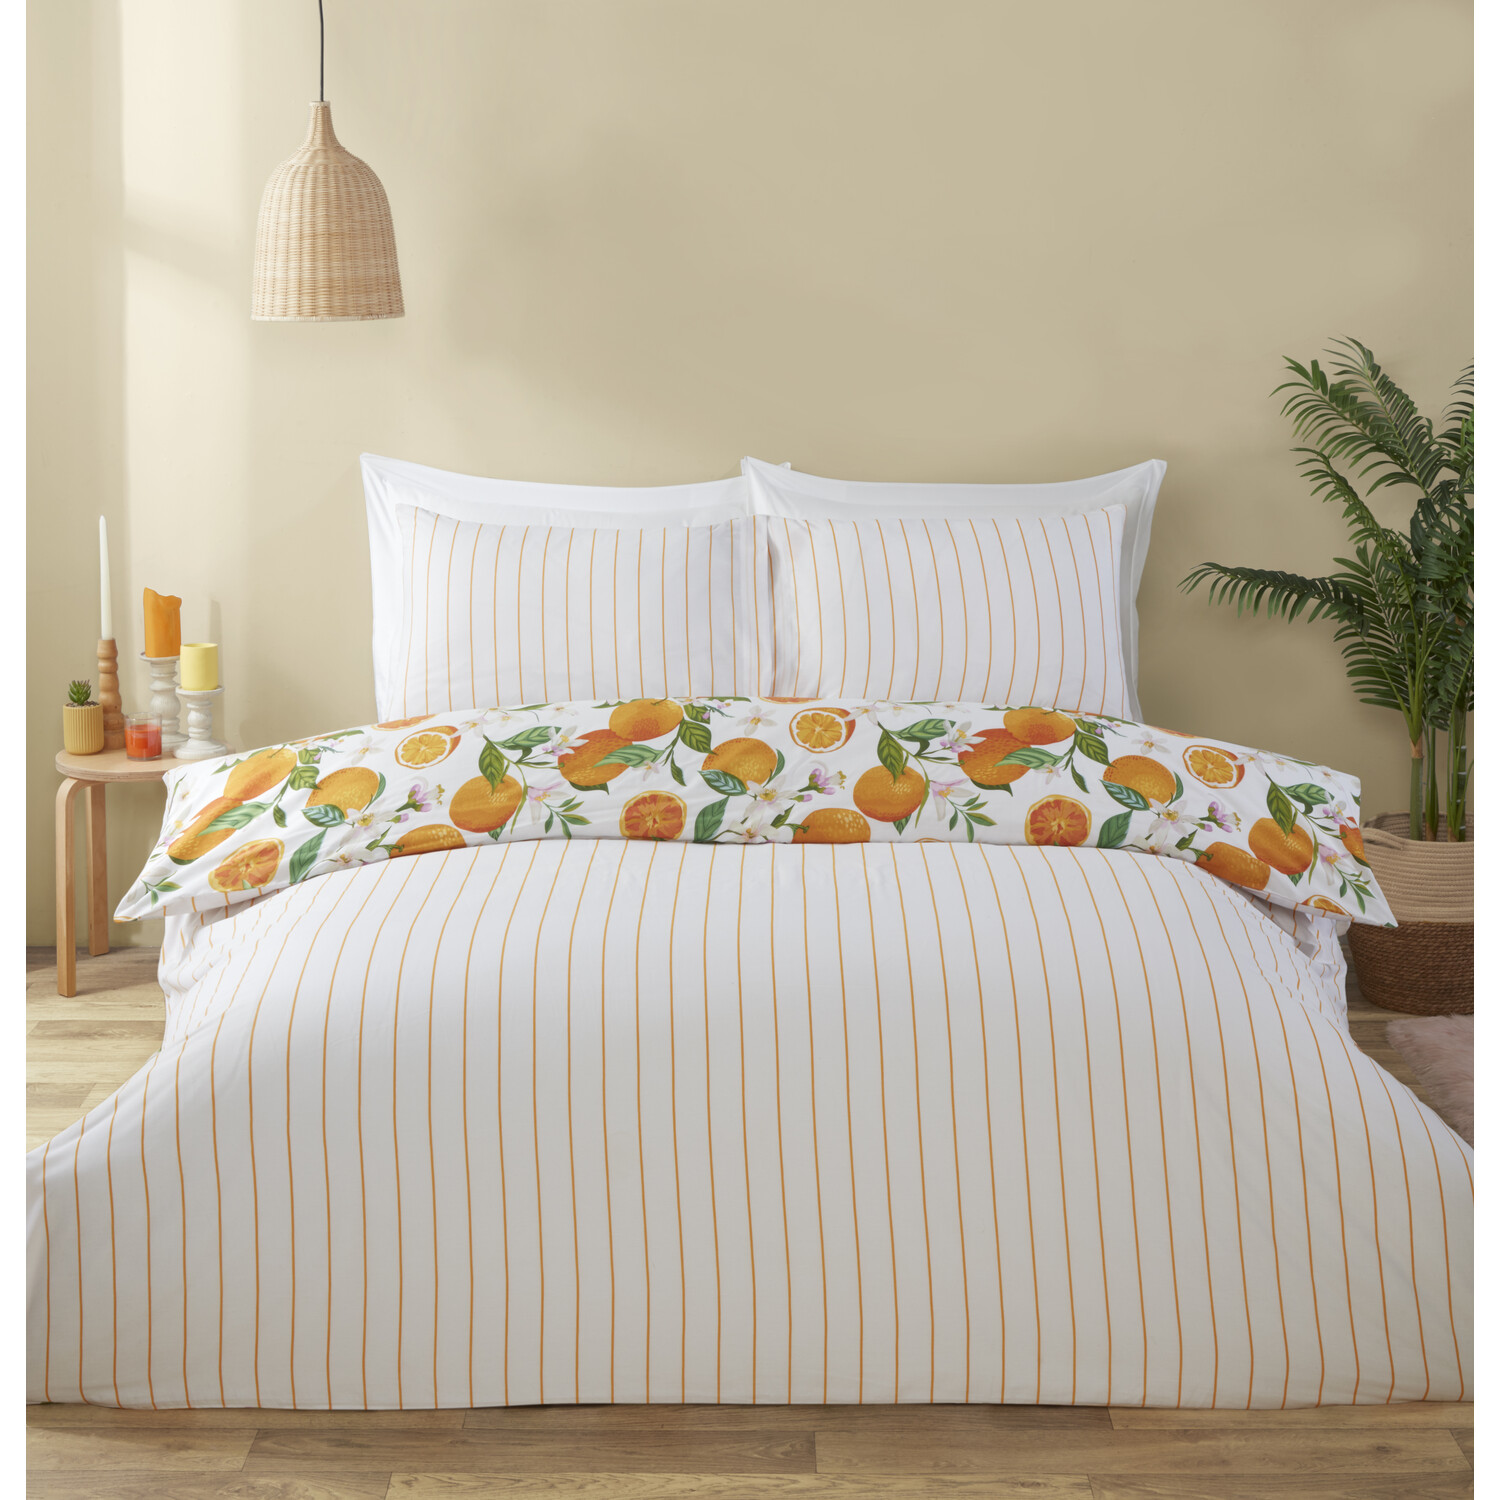 Seville Duvet Cover and Pillowcase Set - Orange / King Image 2